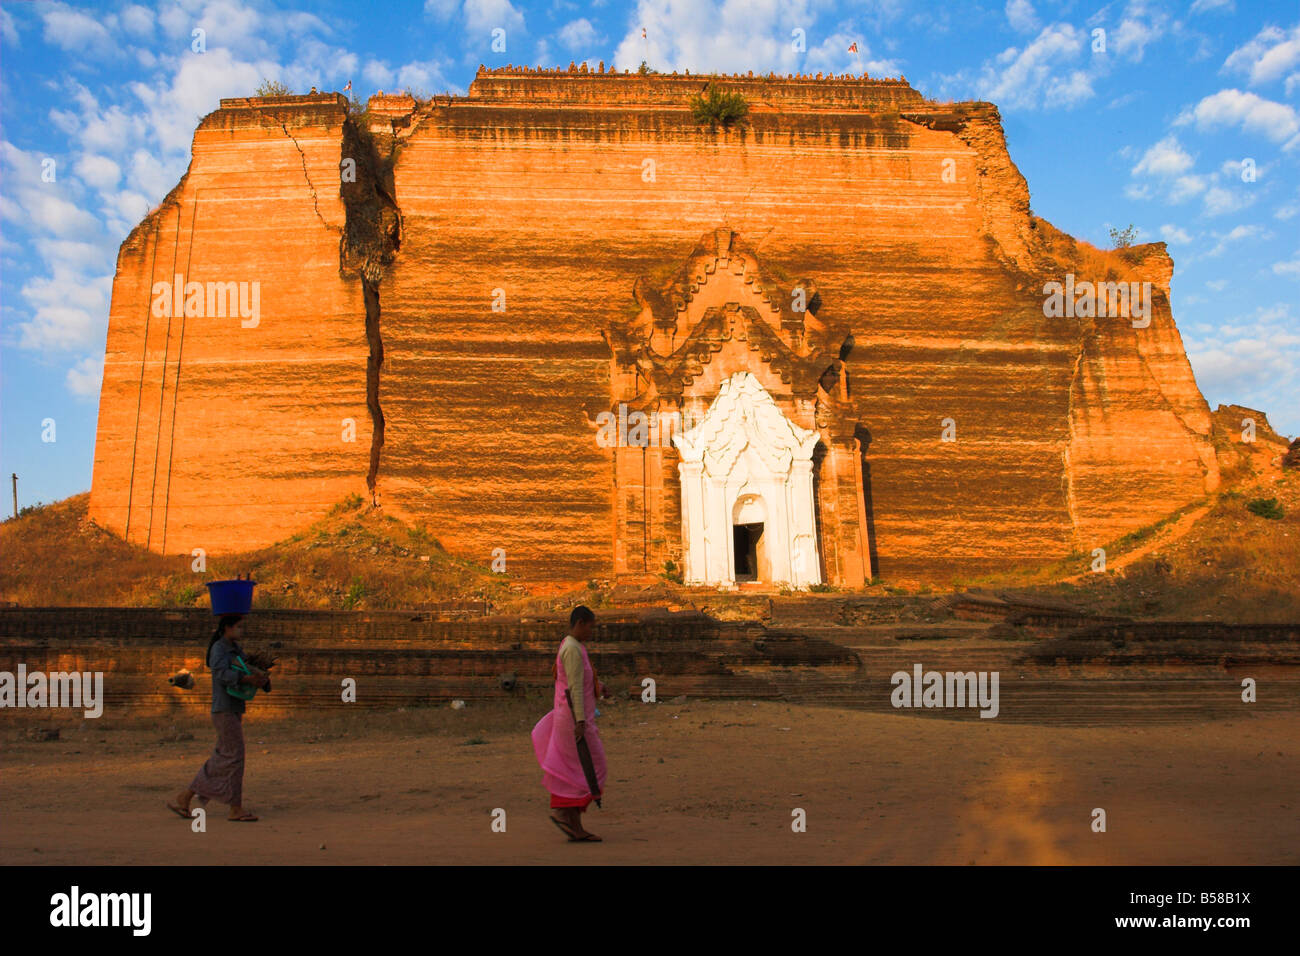 Frau und Nonne vorbeigehen Paya beschädigt durch Erdbeben Mingun Paya Mingun Mandalay Myanmar Burma Asien Stockfoto